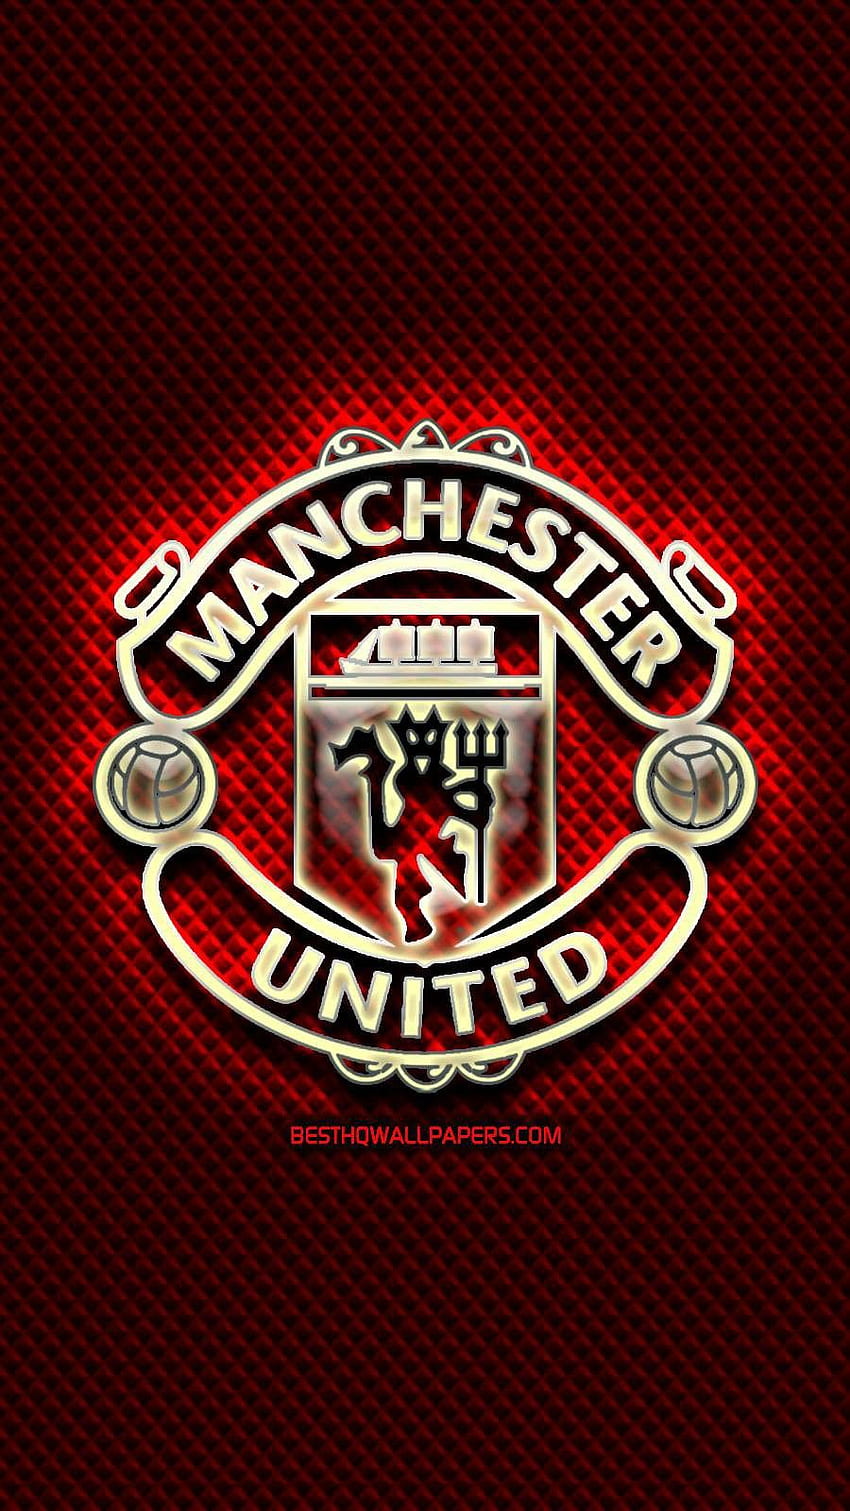 Teléfono del Manchester United. Logotipo del Manchester United, equipo del Manchester United, Manchester United fondo de pantalla del teléfono